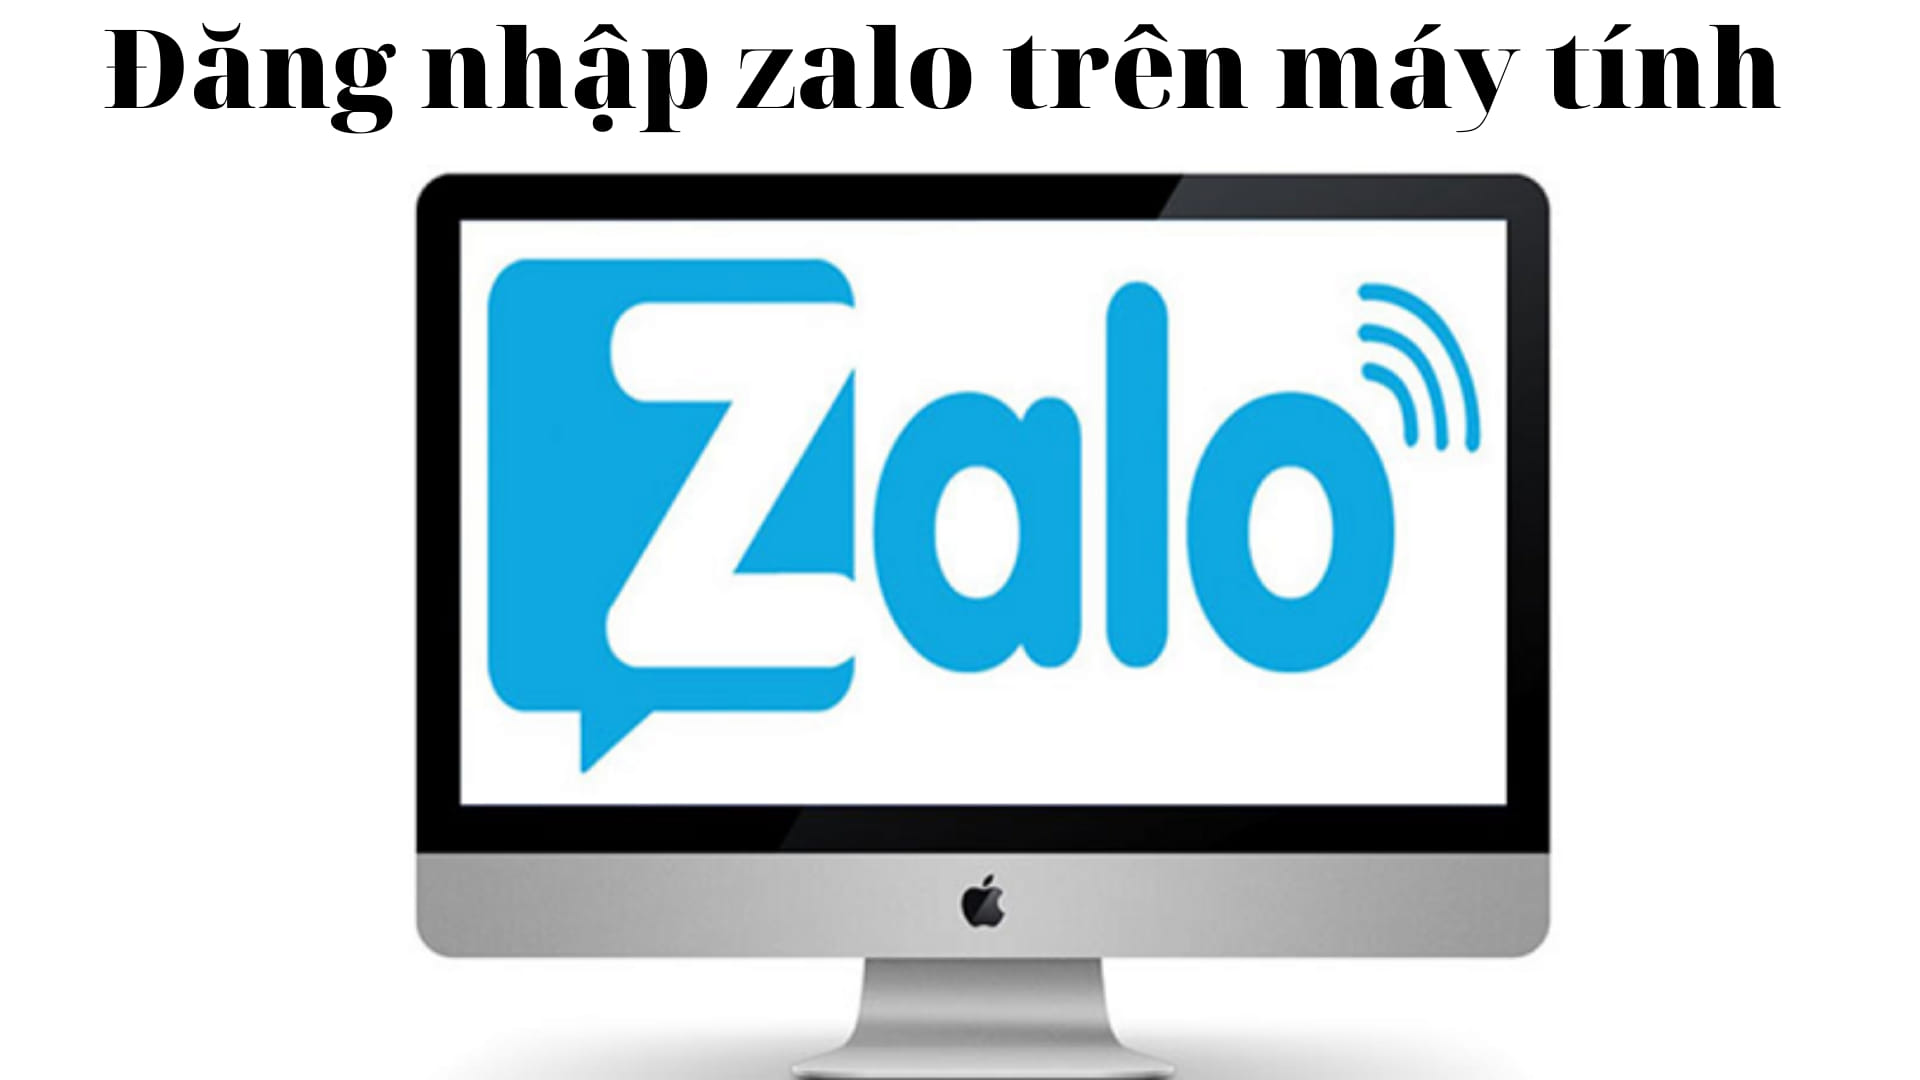 Tổng hợp các cách đăng nhập Zalo trên máy tính hiện nay